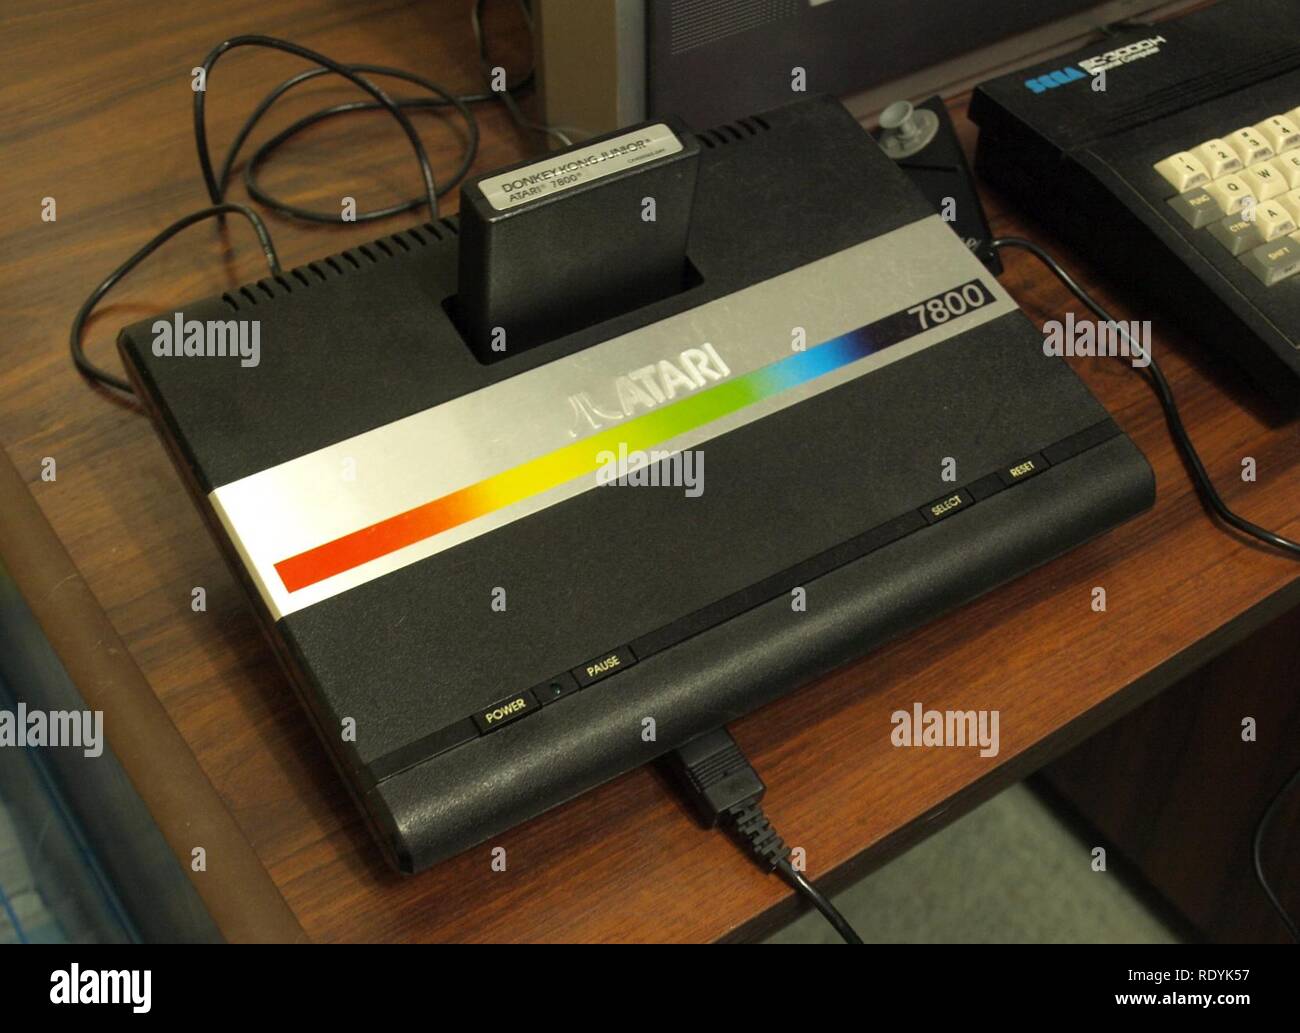 Atari 7800 with Cartridge. Stock Photo